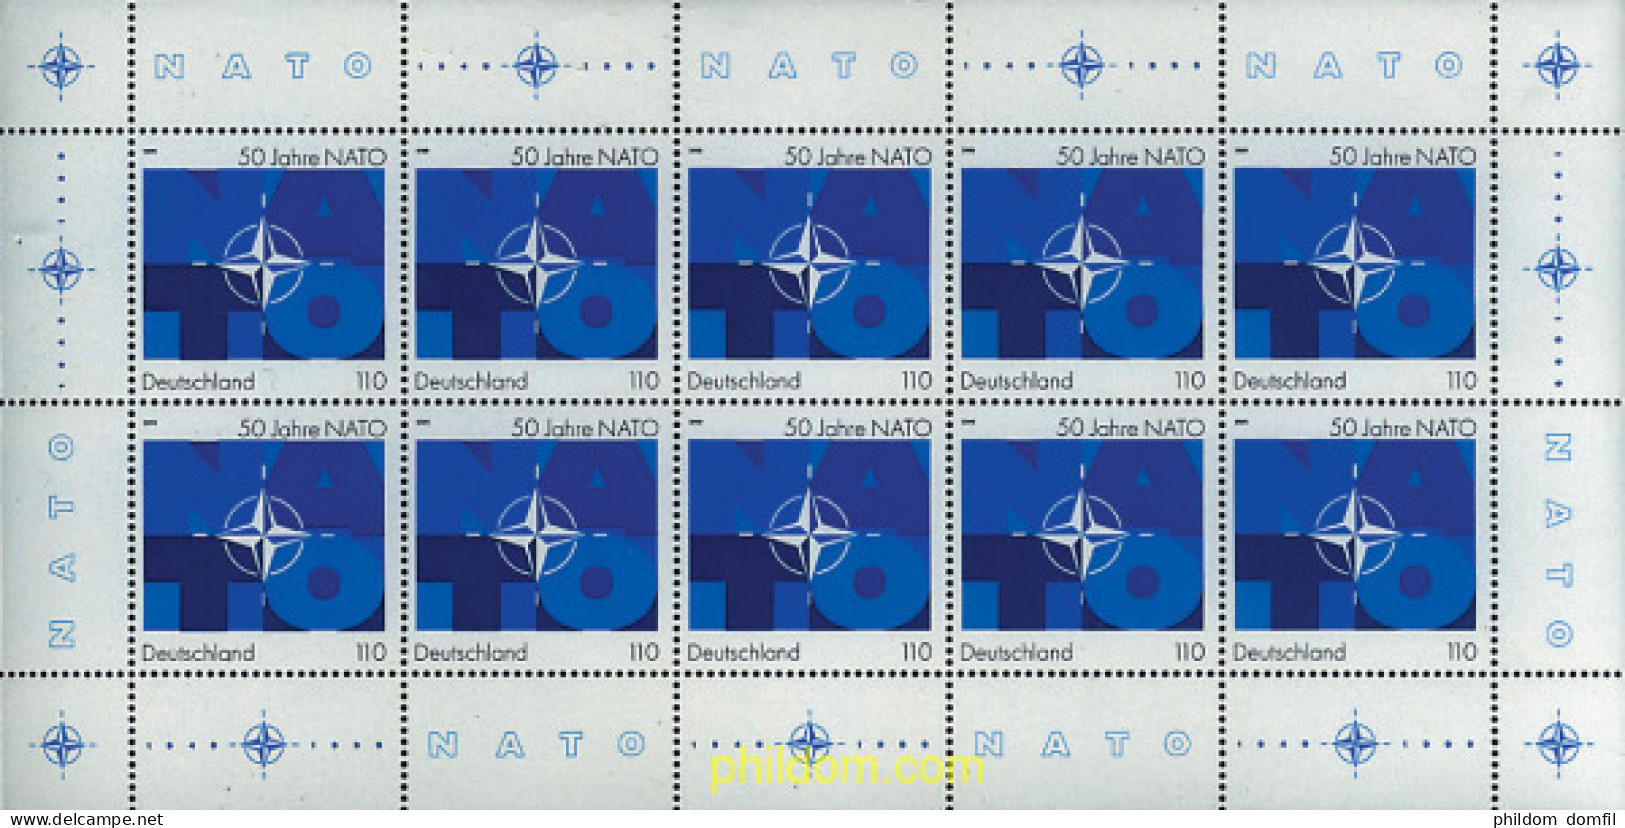 11312 MNH ALEMANIA FEDERAL 1999 50 ANIVERSARIO DE LA OTAN - Unused Stamps